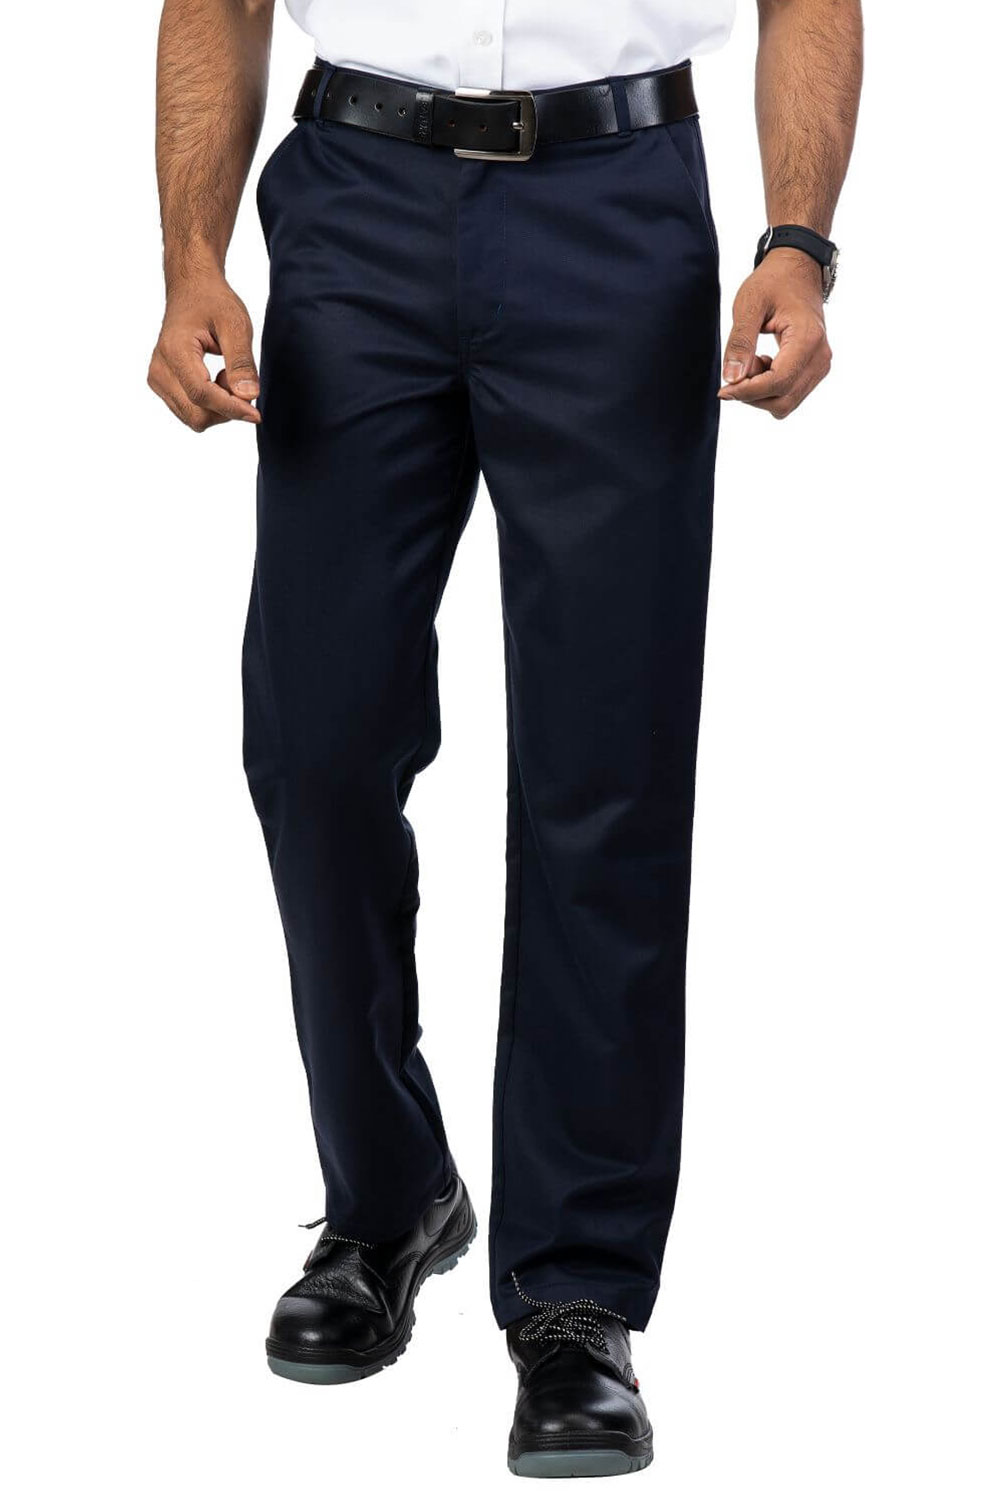 Cotton Blend Navy Formal Trouser For Men